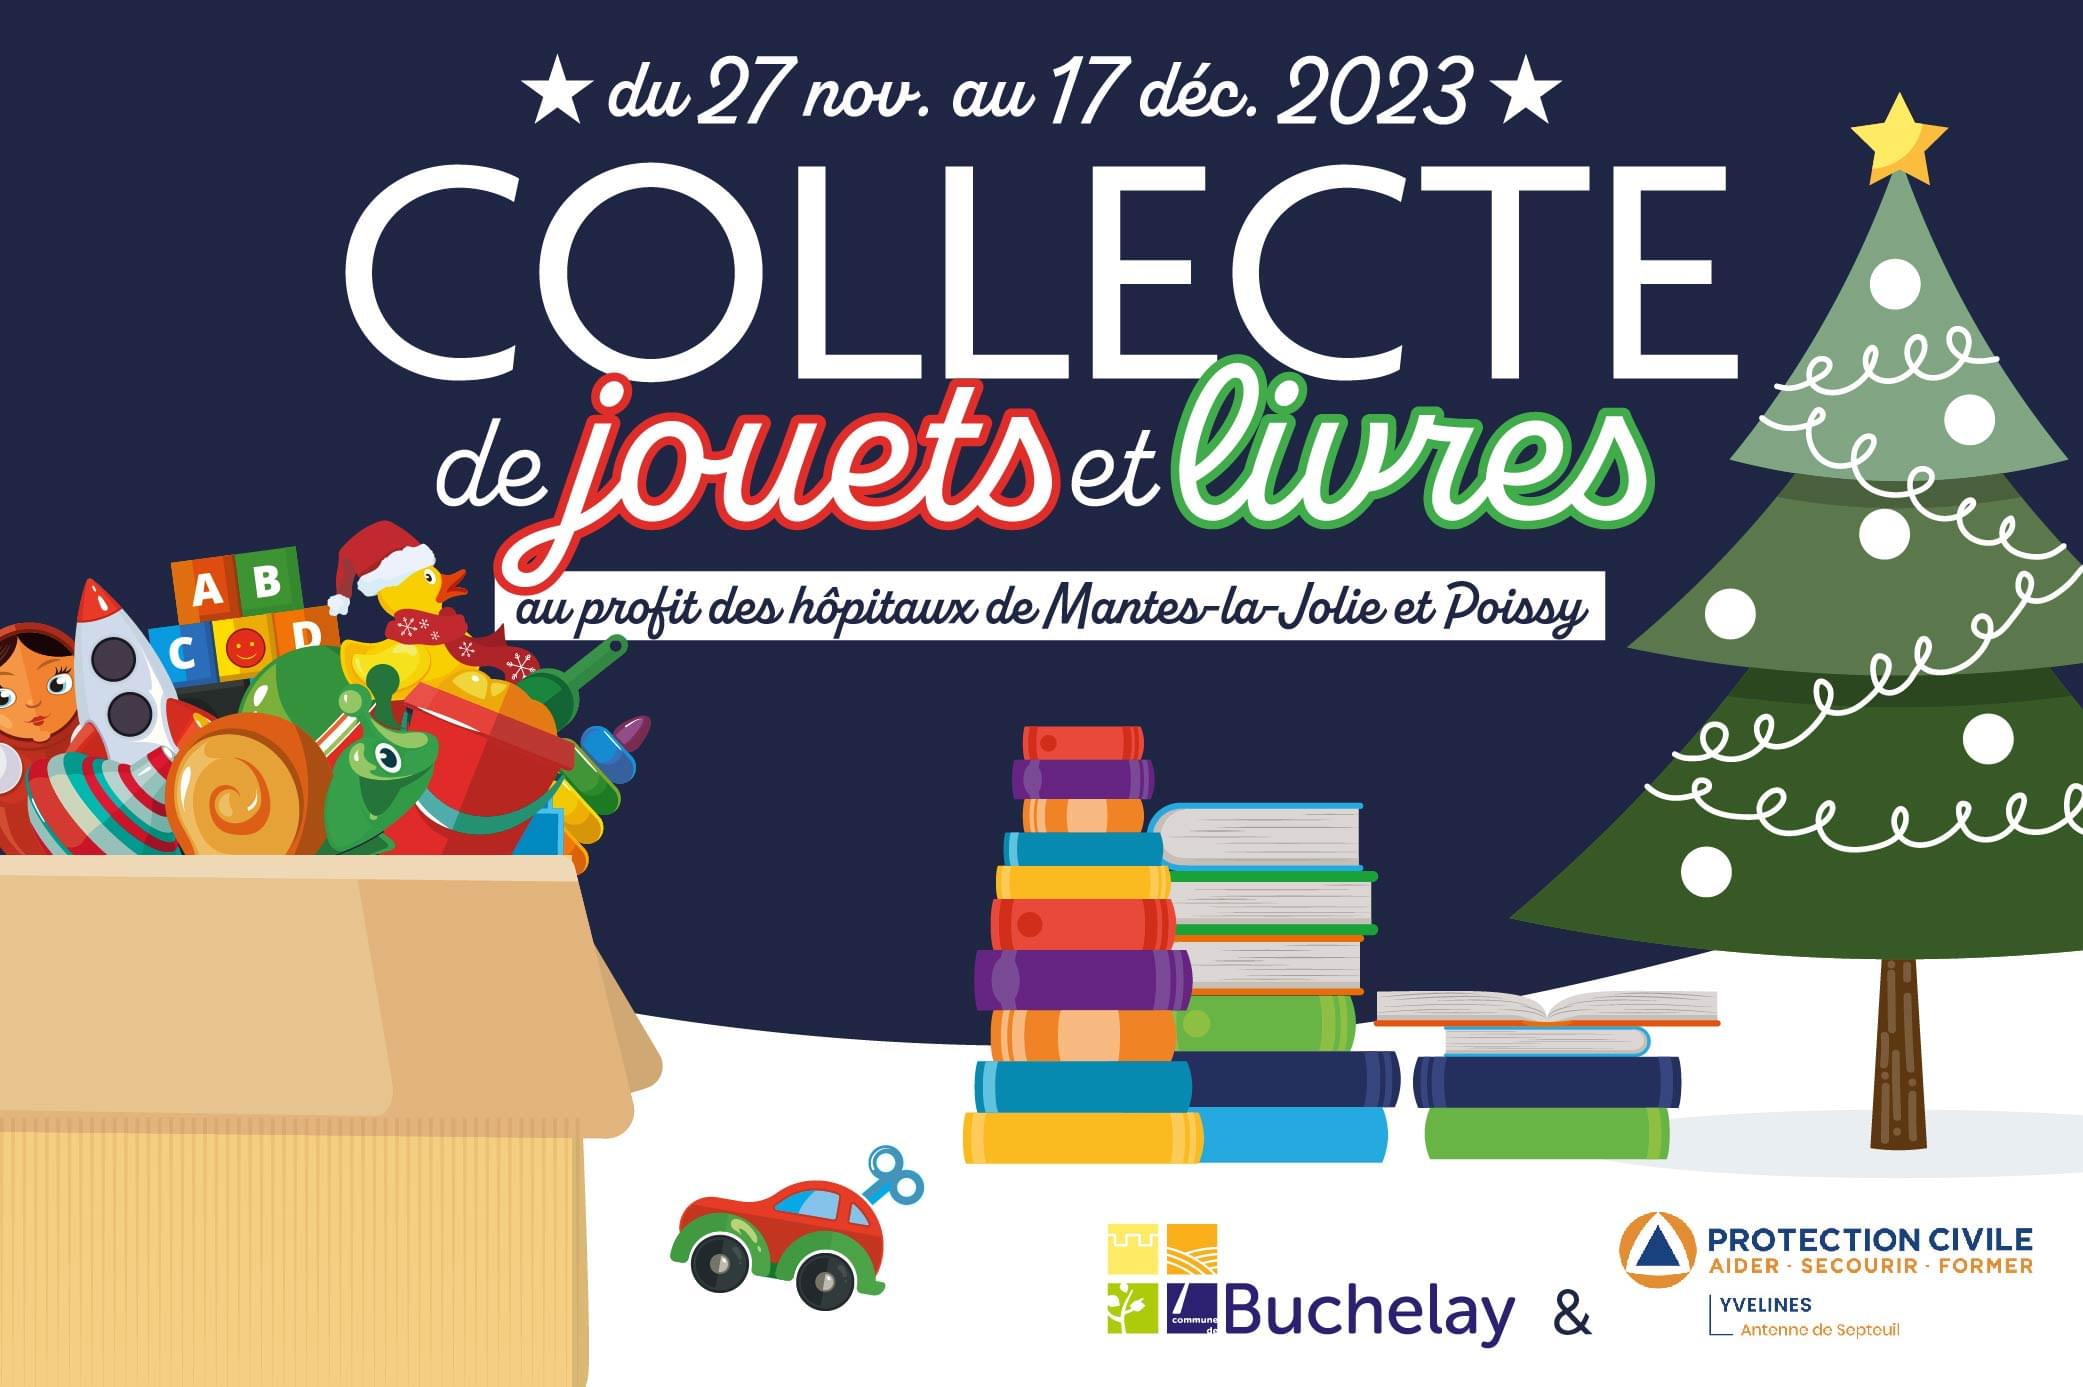 Collecte de jouets et livres à Buchelay